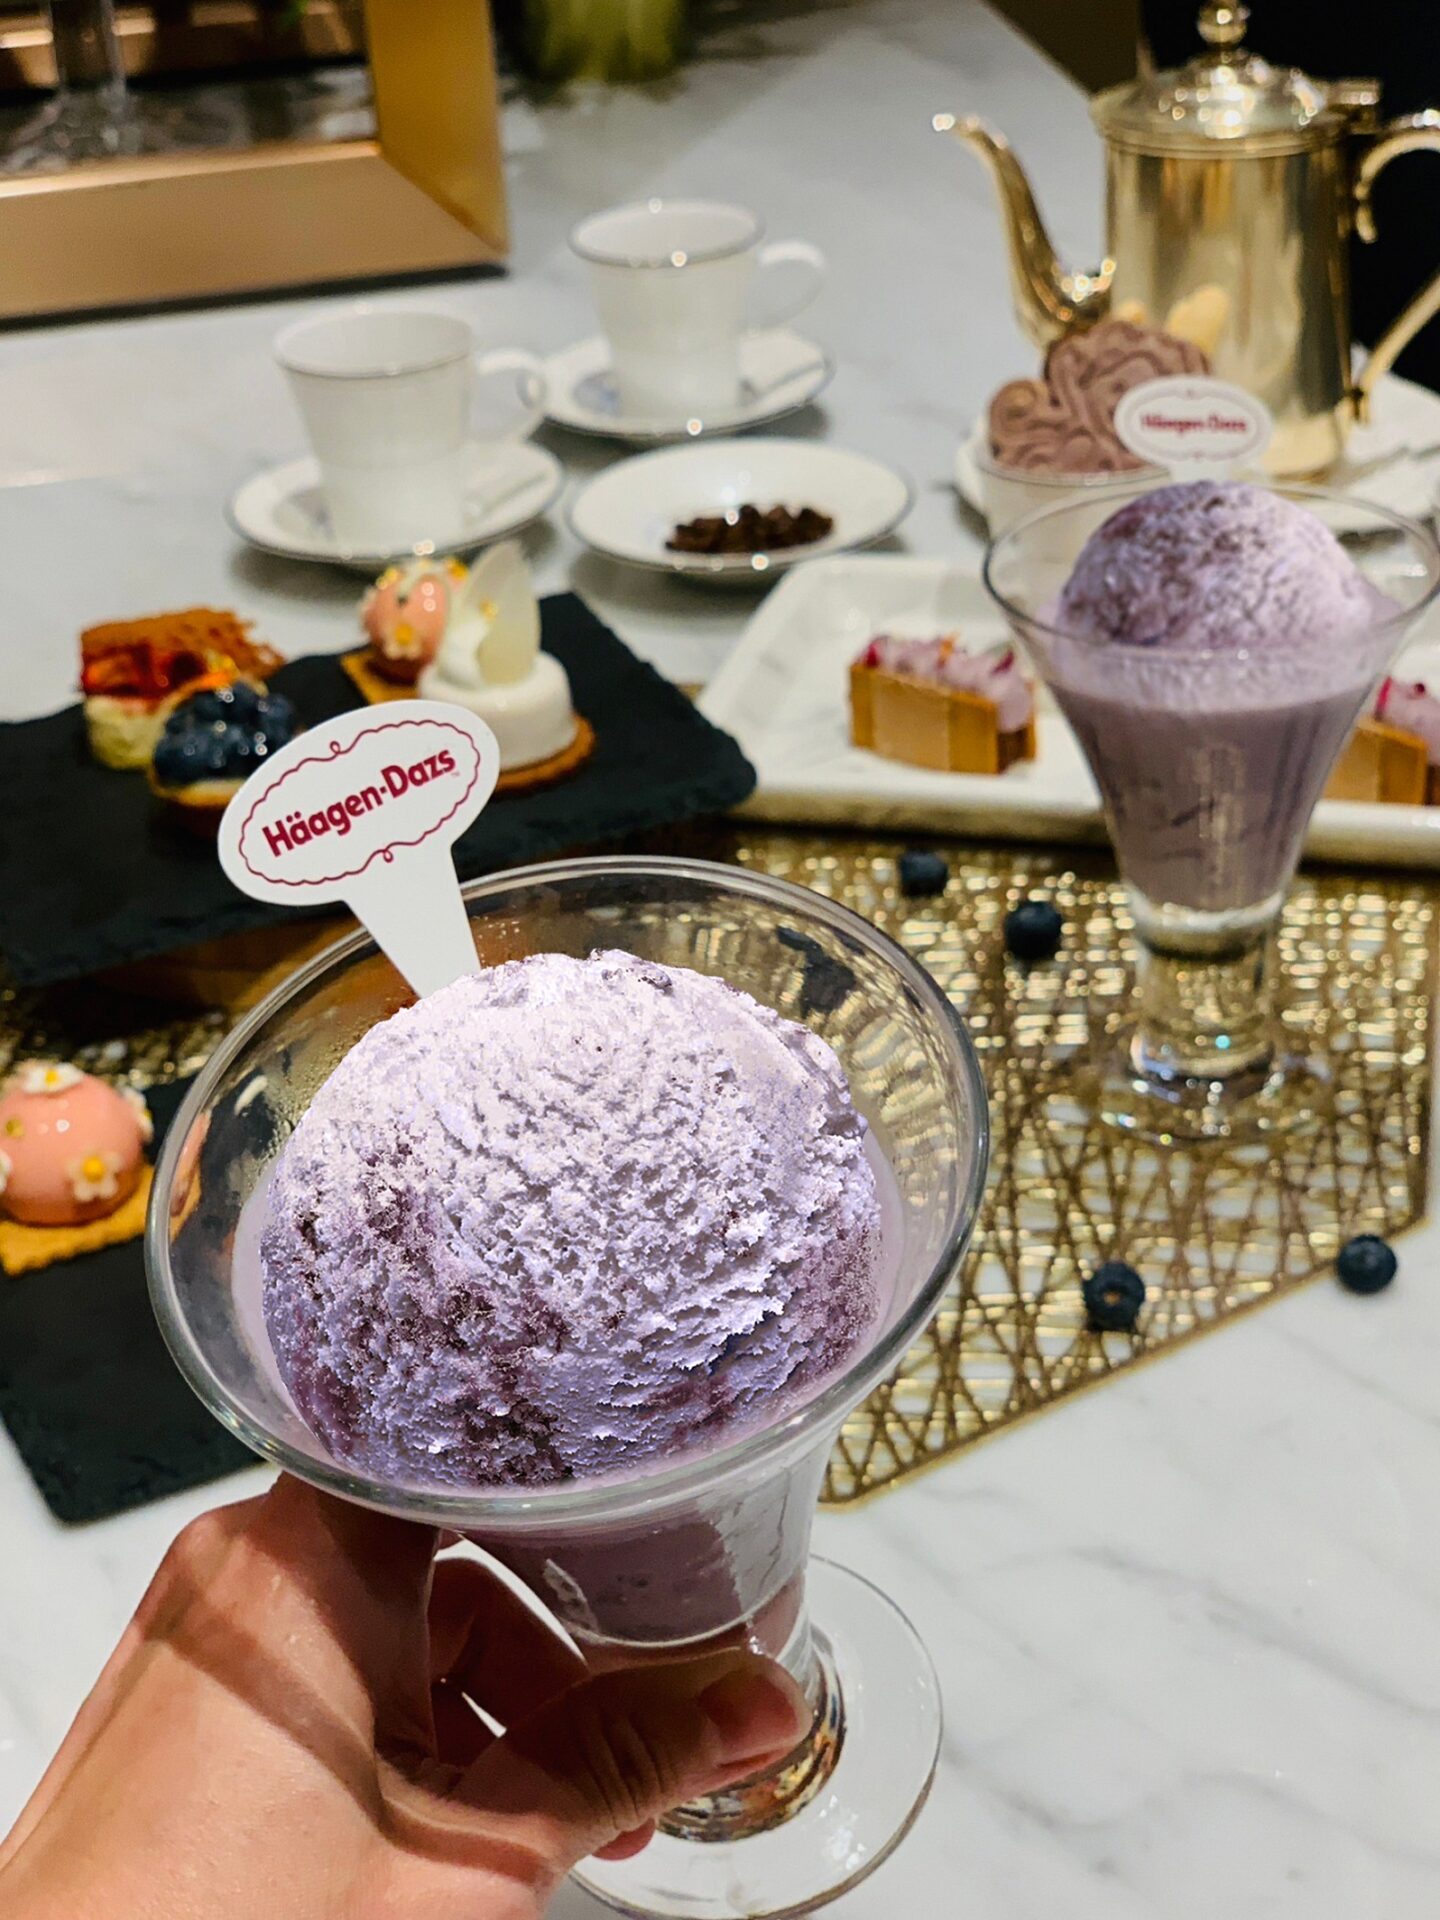 漢來大廳酒廊雙人經典午茶，包含哈根達斯期間限定「藍莓塔冰淇淋」，能品嚐到塔皮鬆軟中帶點酥脆的細膩口感，十分驚喜!